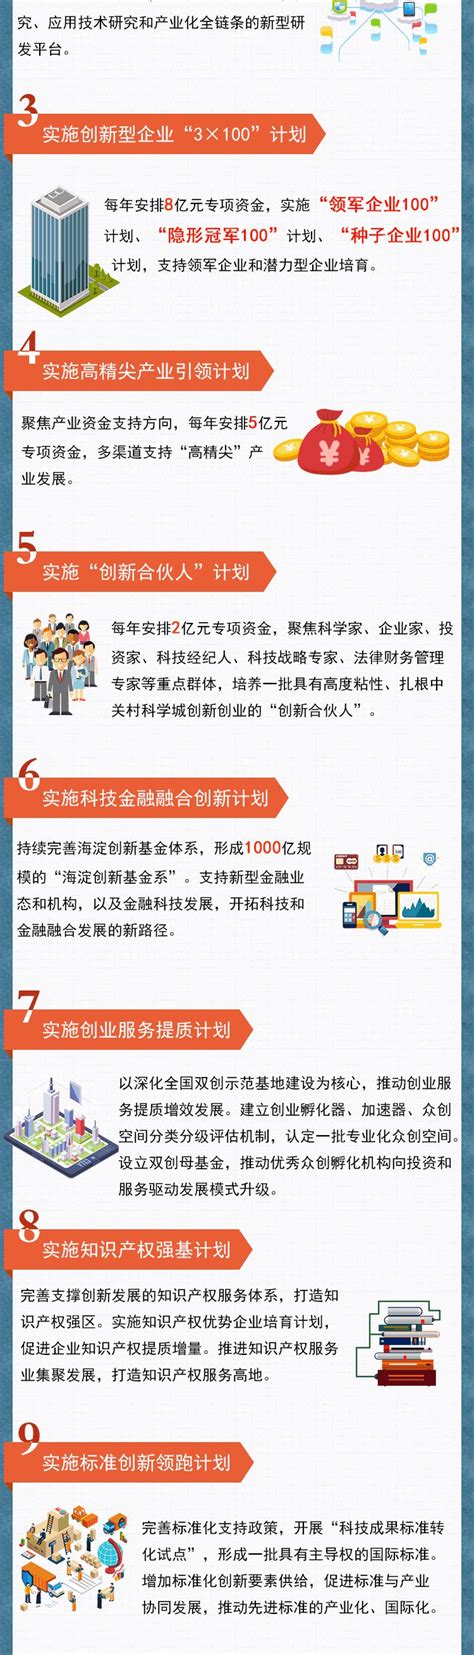 出口退税系统全面优化升级 一图梳理表单新变化_北京市海淀服务贸易与外包企业协会